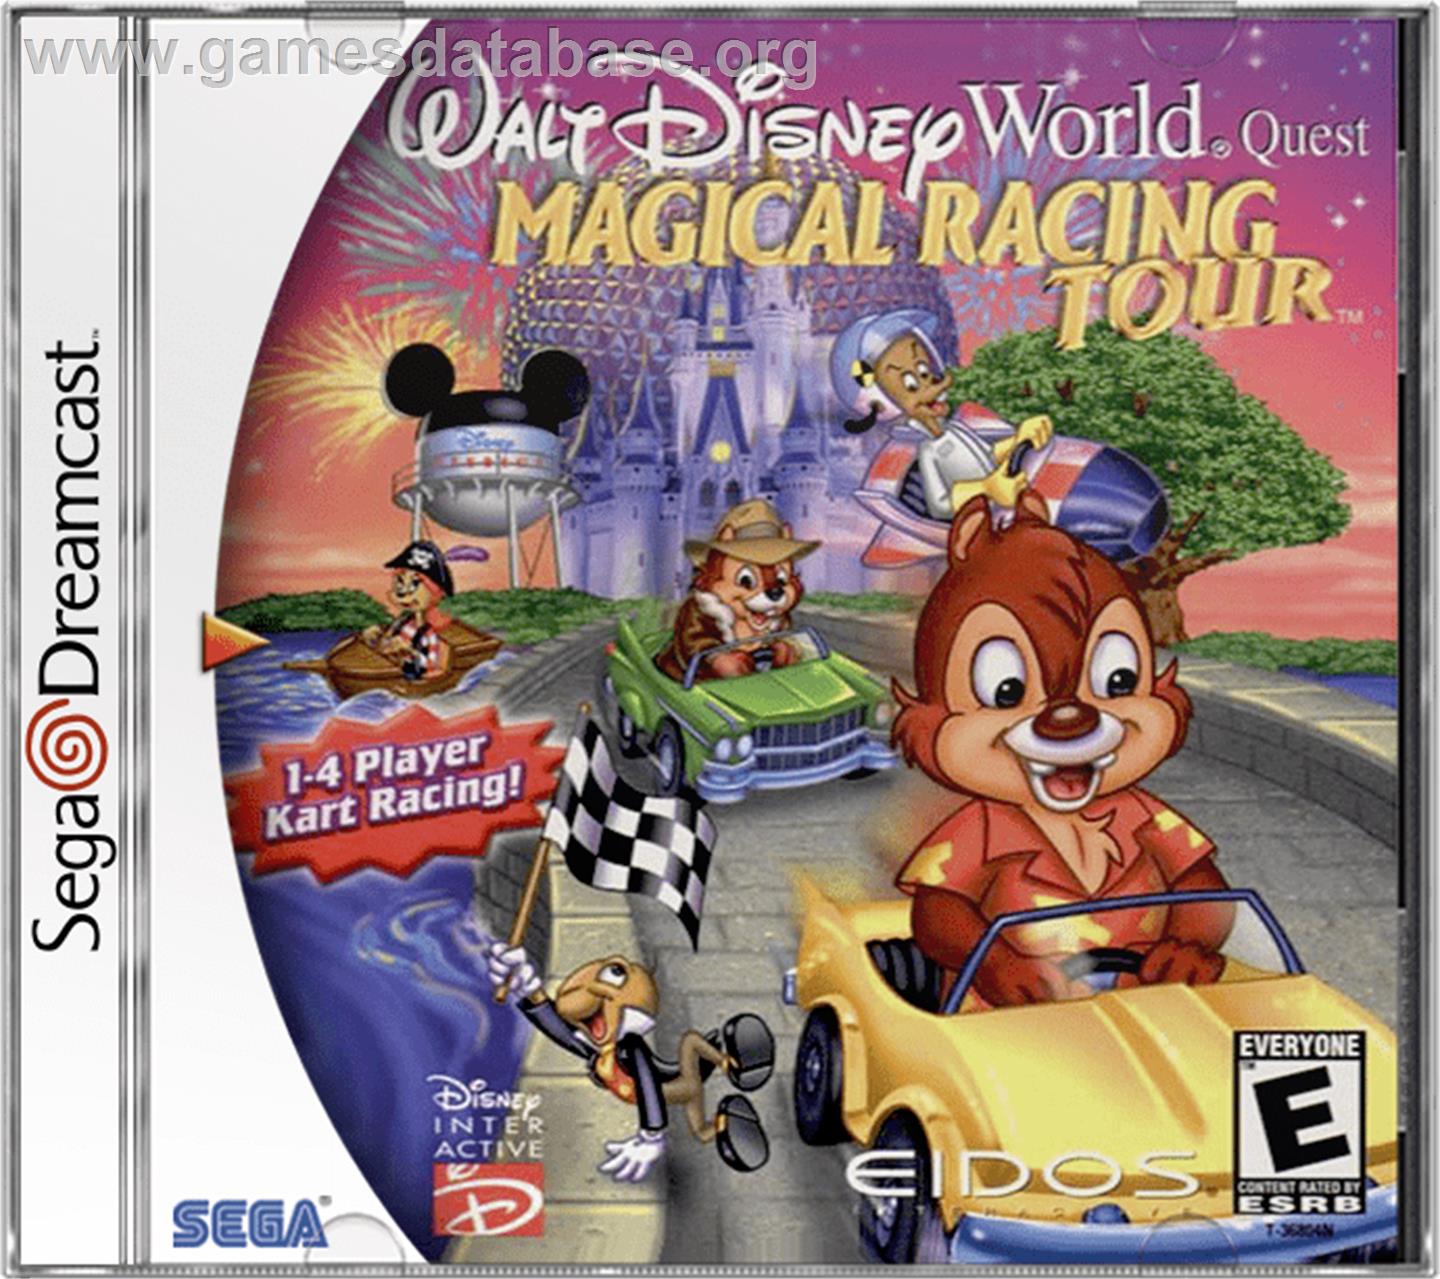 Walt Disney World Quest: Magical Racing Tour - Sega Dreamcast - Artwork - Box